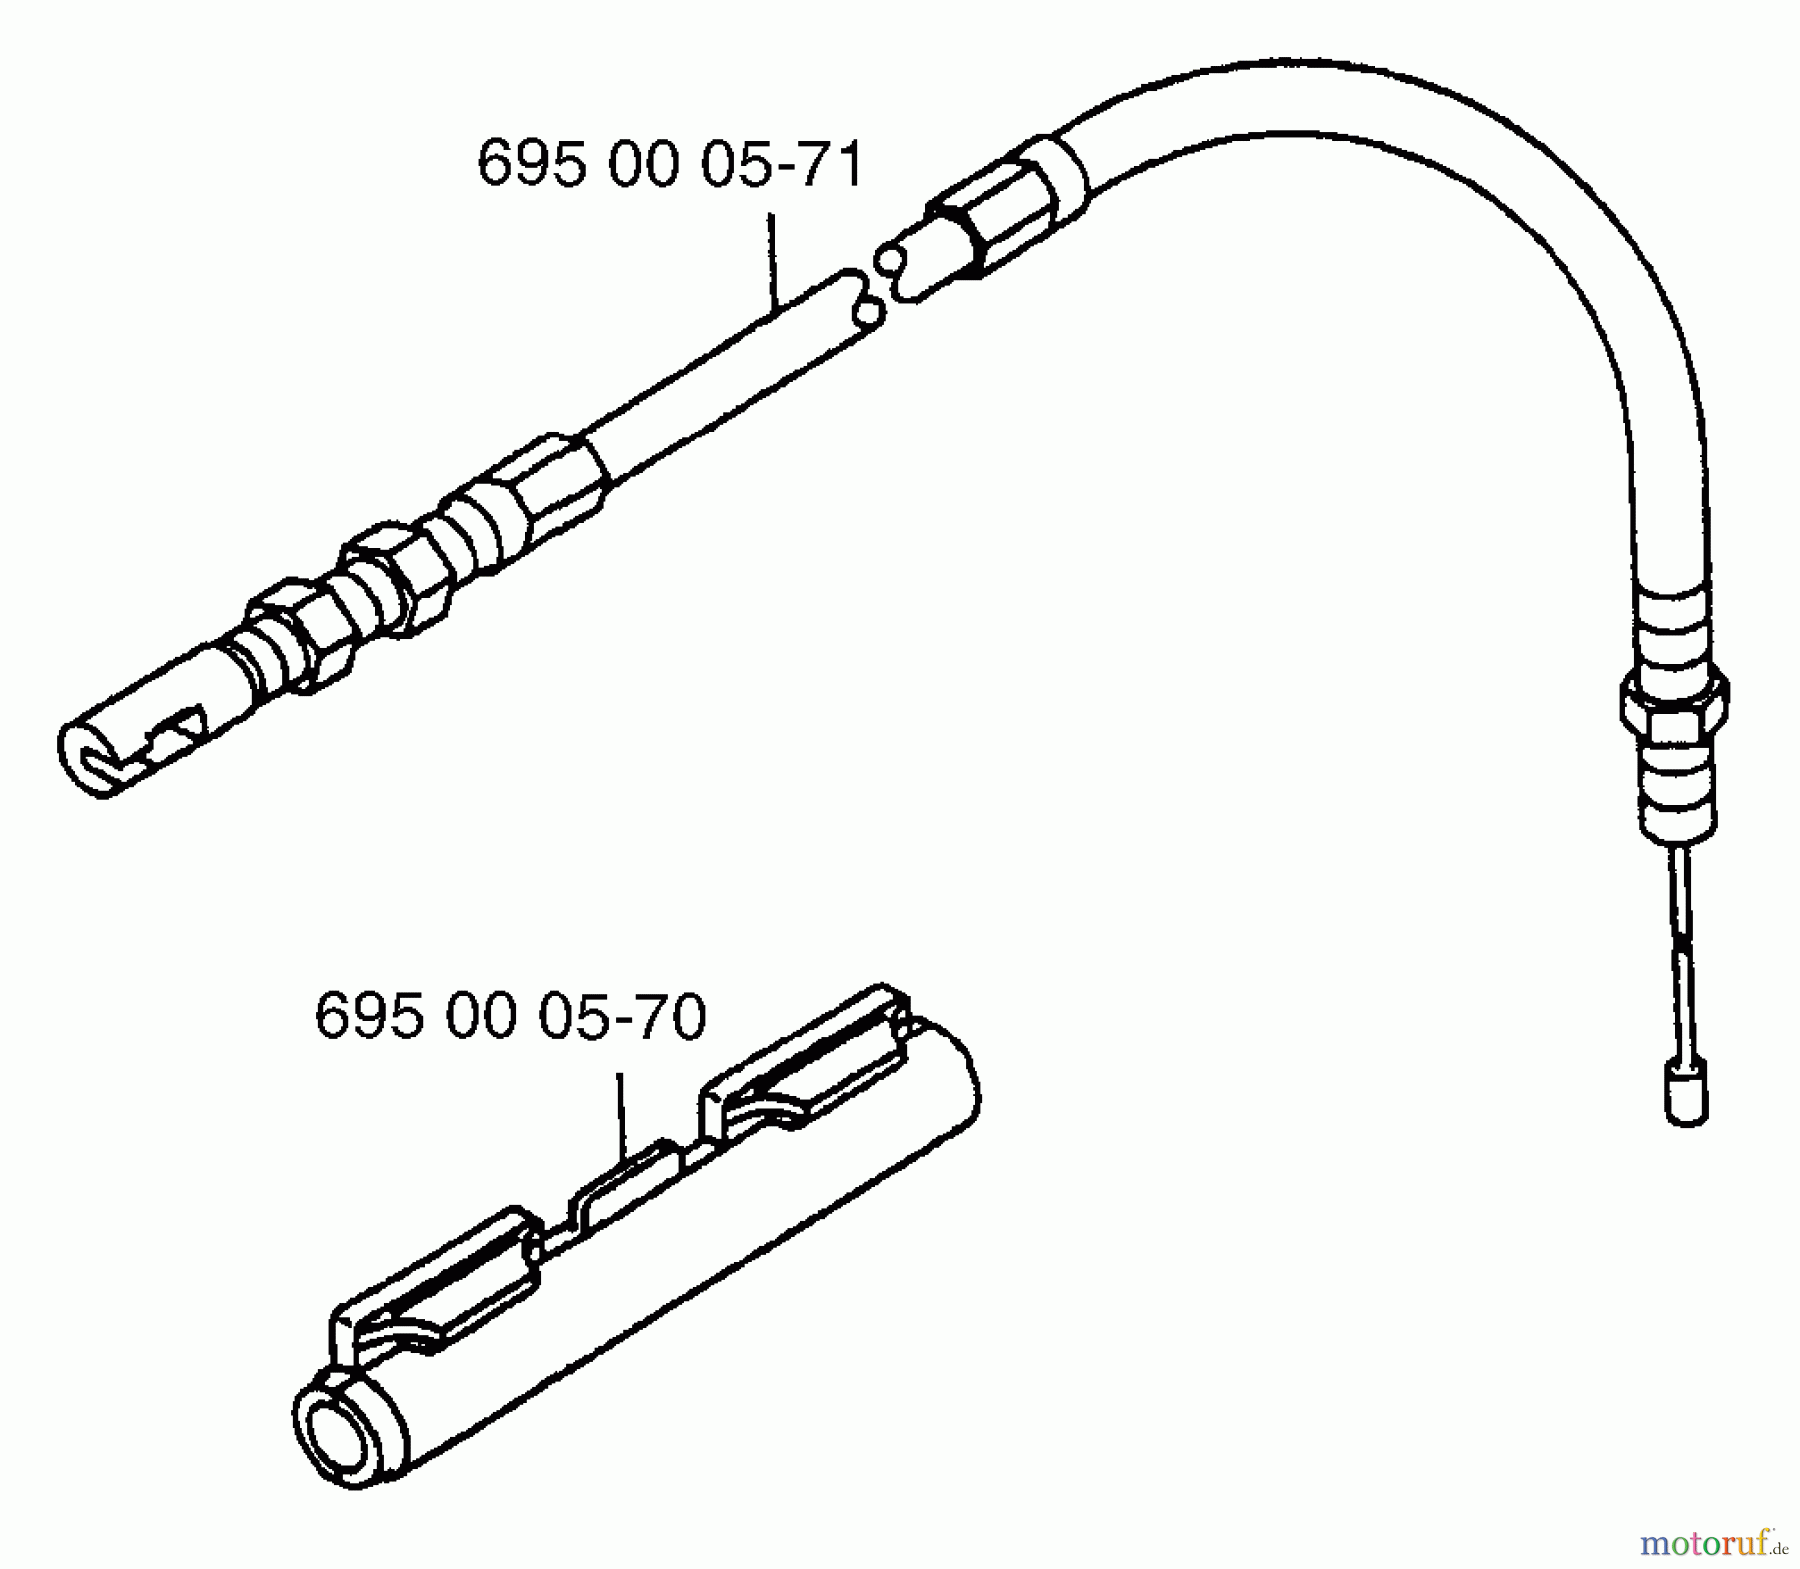  Husqvarna Bläser / Sauger / Häcksler / Mulchgeräte 145 BT - Husqvarna Backpack Blower (1997-05 & After) Secondary Throttle Cable